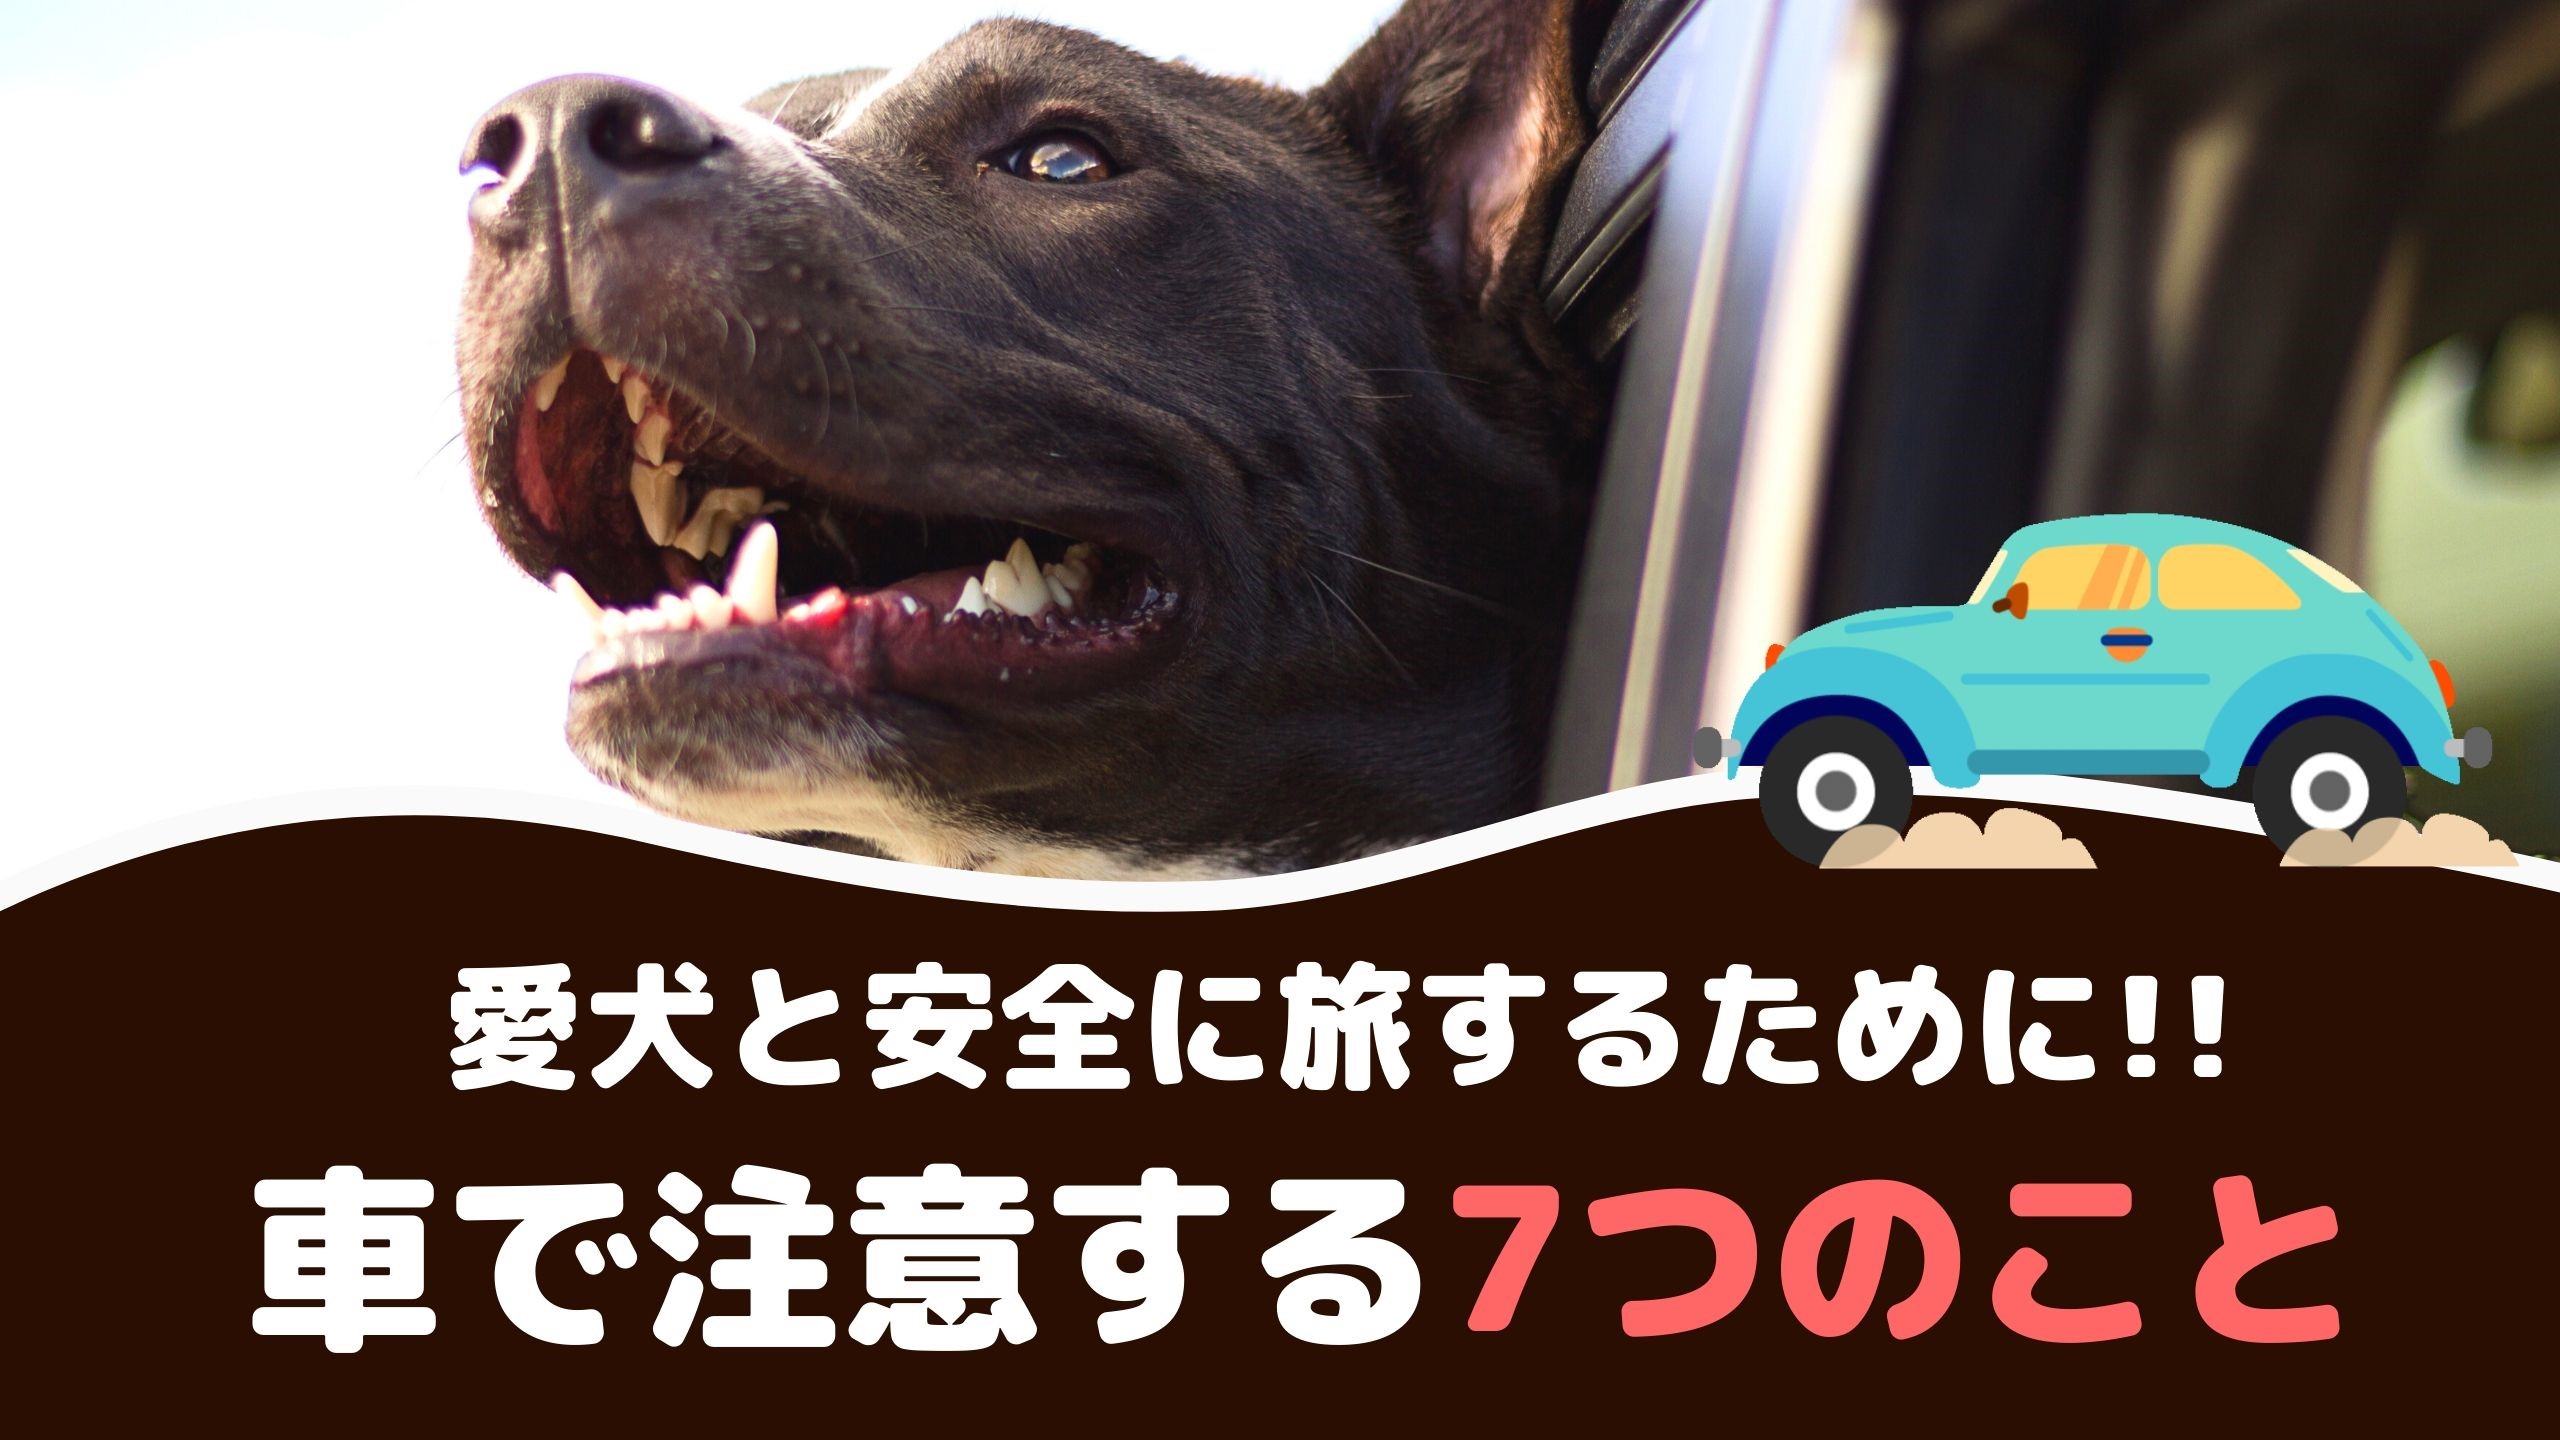 愛犬と安全にドライブするために 車で注意する7つのこと 動物看護師が解説 愛犬との旅行ならイヌトミィ